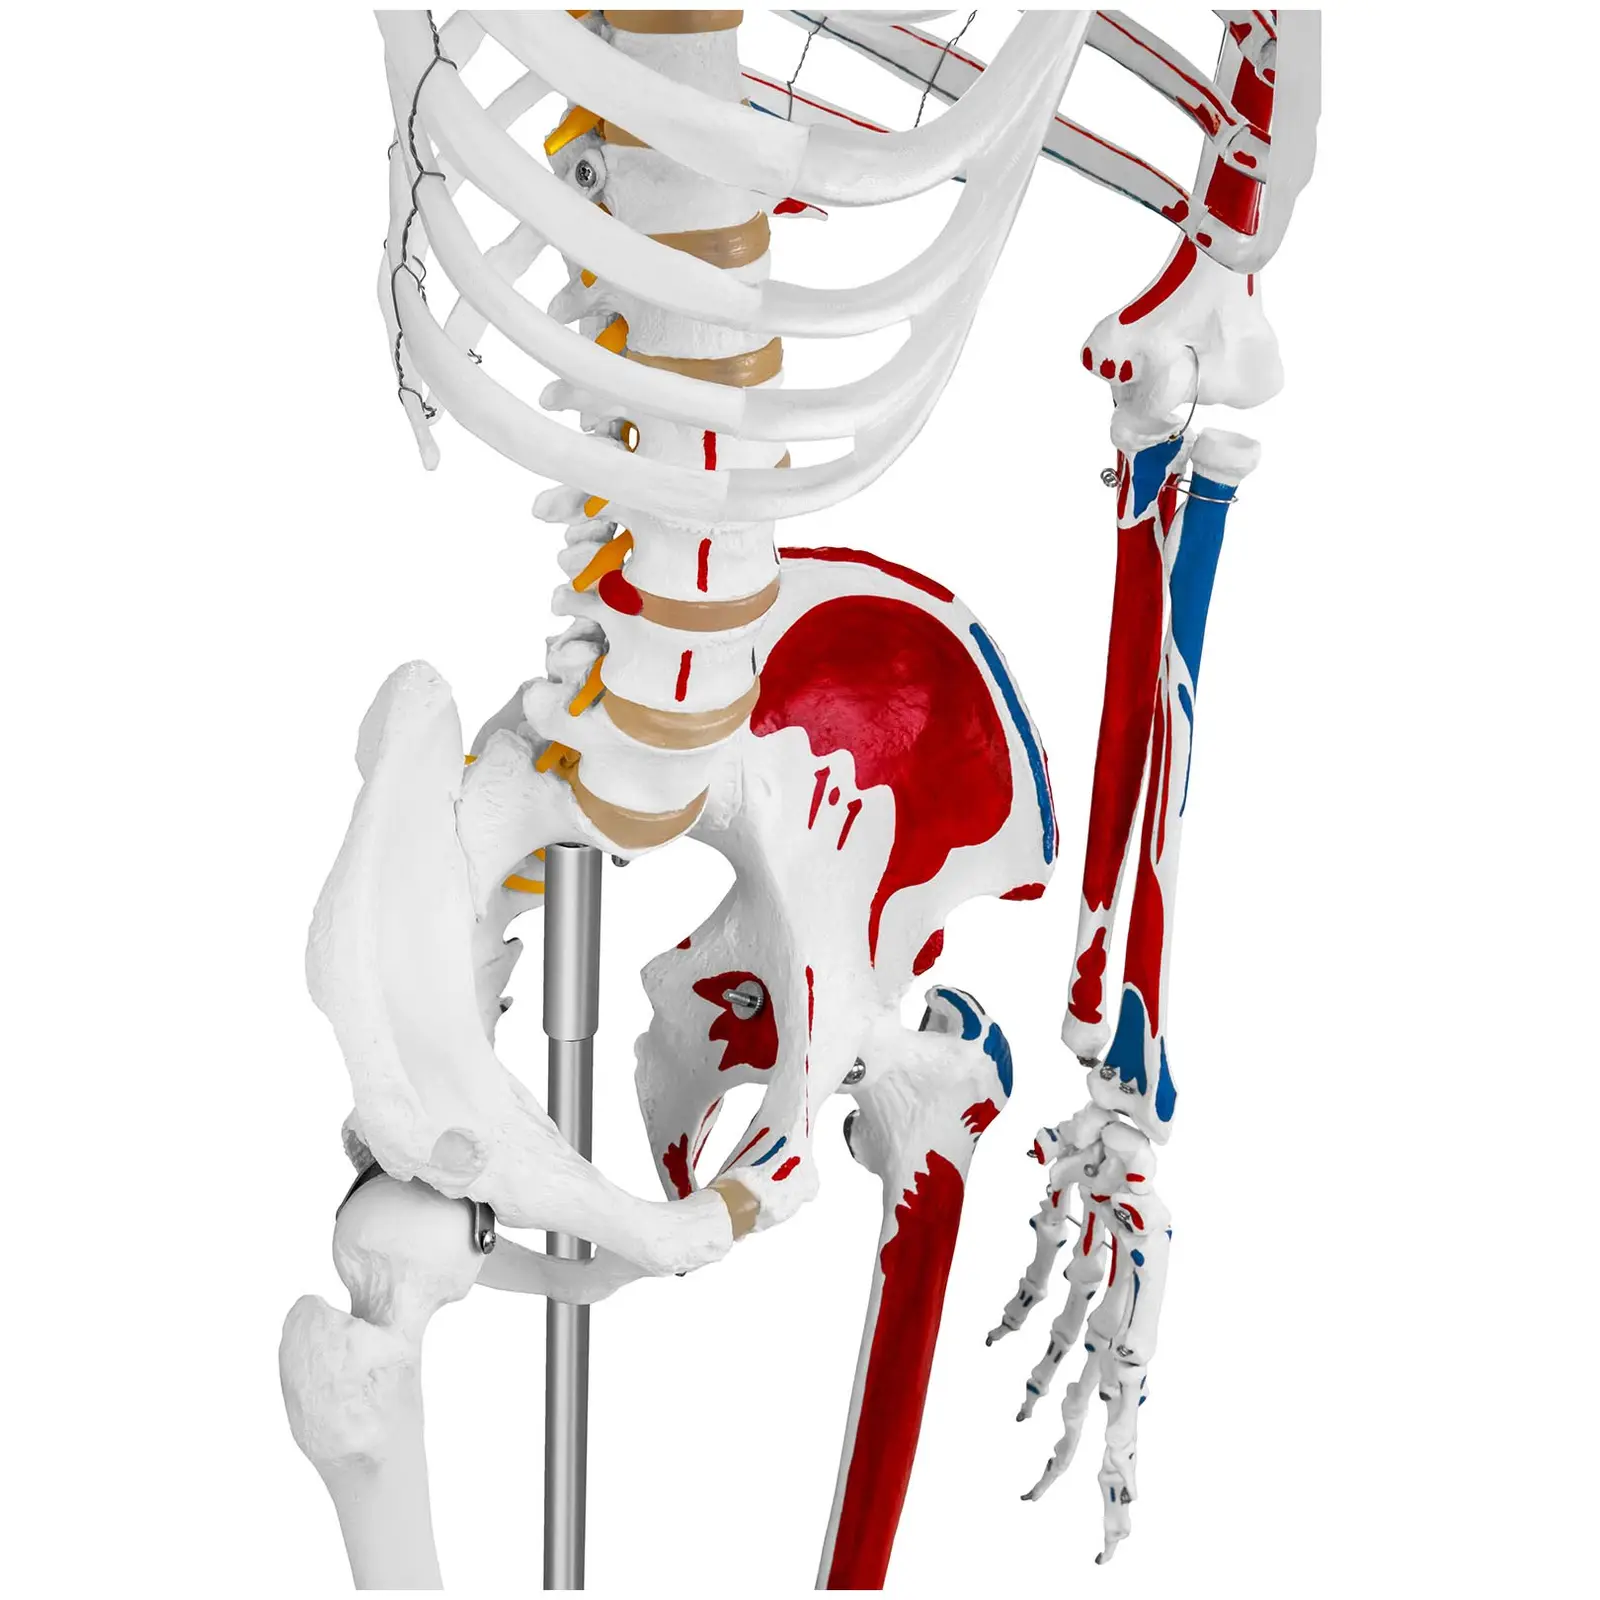 Modello scheletro umano - A grandezza naturale - Colorato - 4